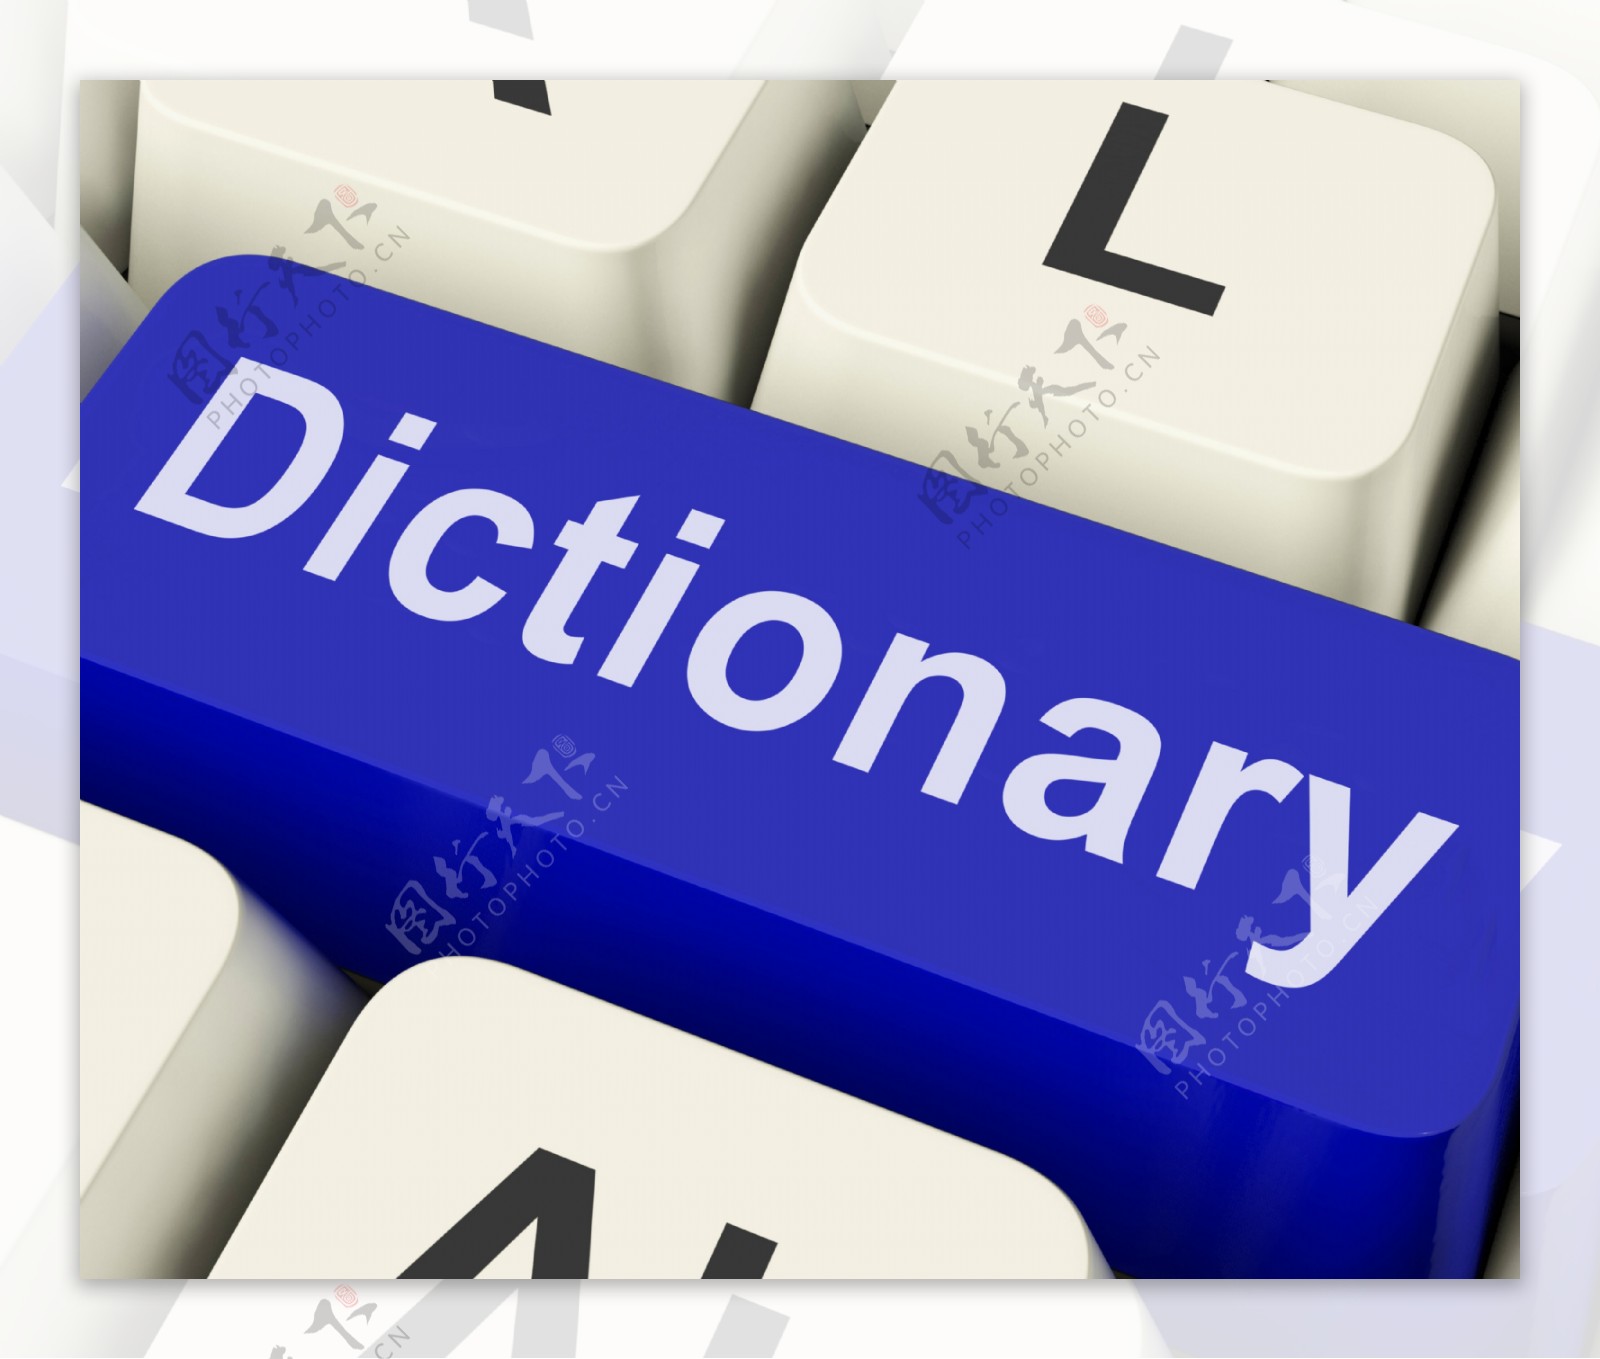 字典的键显示在线网络定义或参考